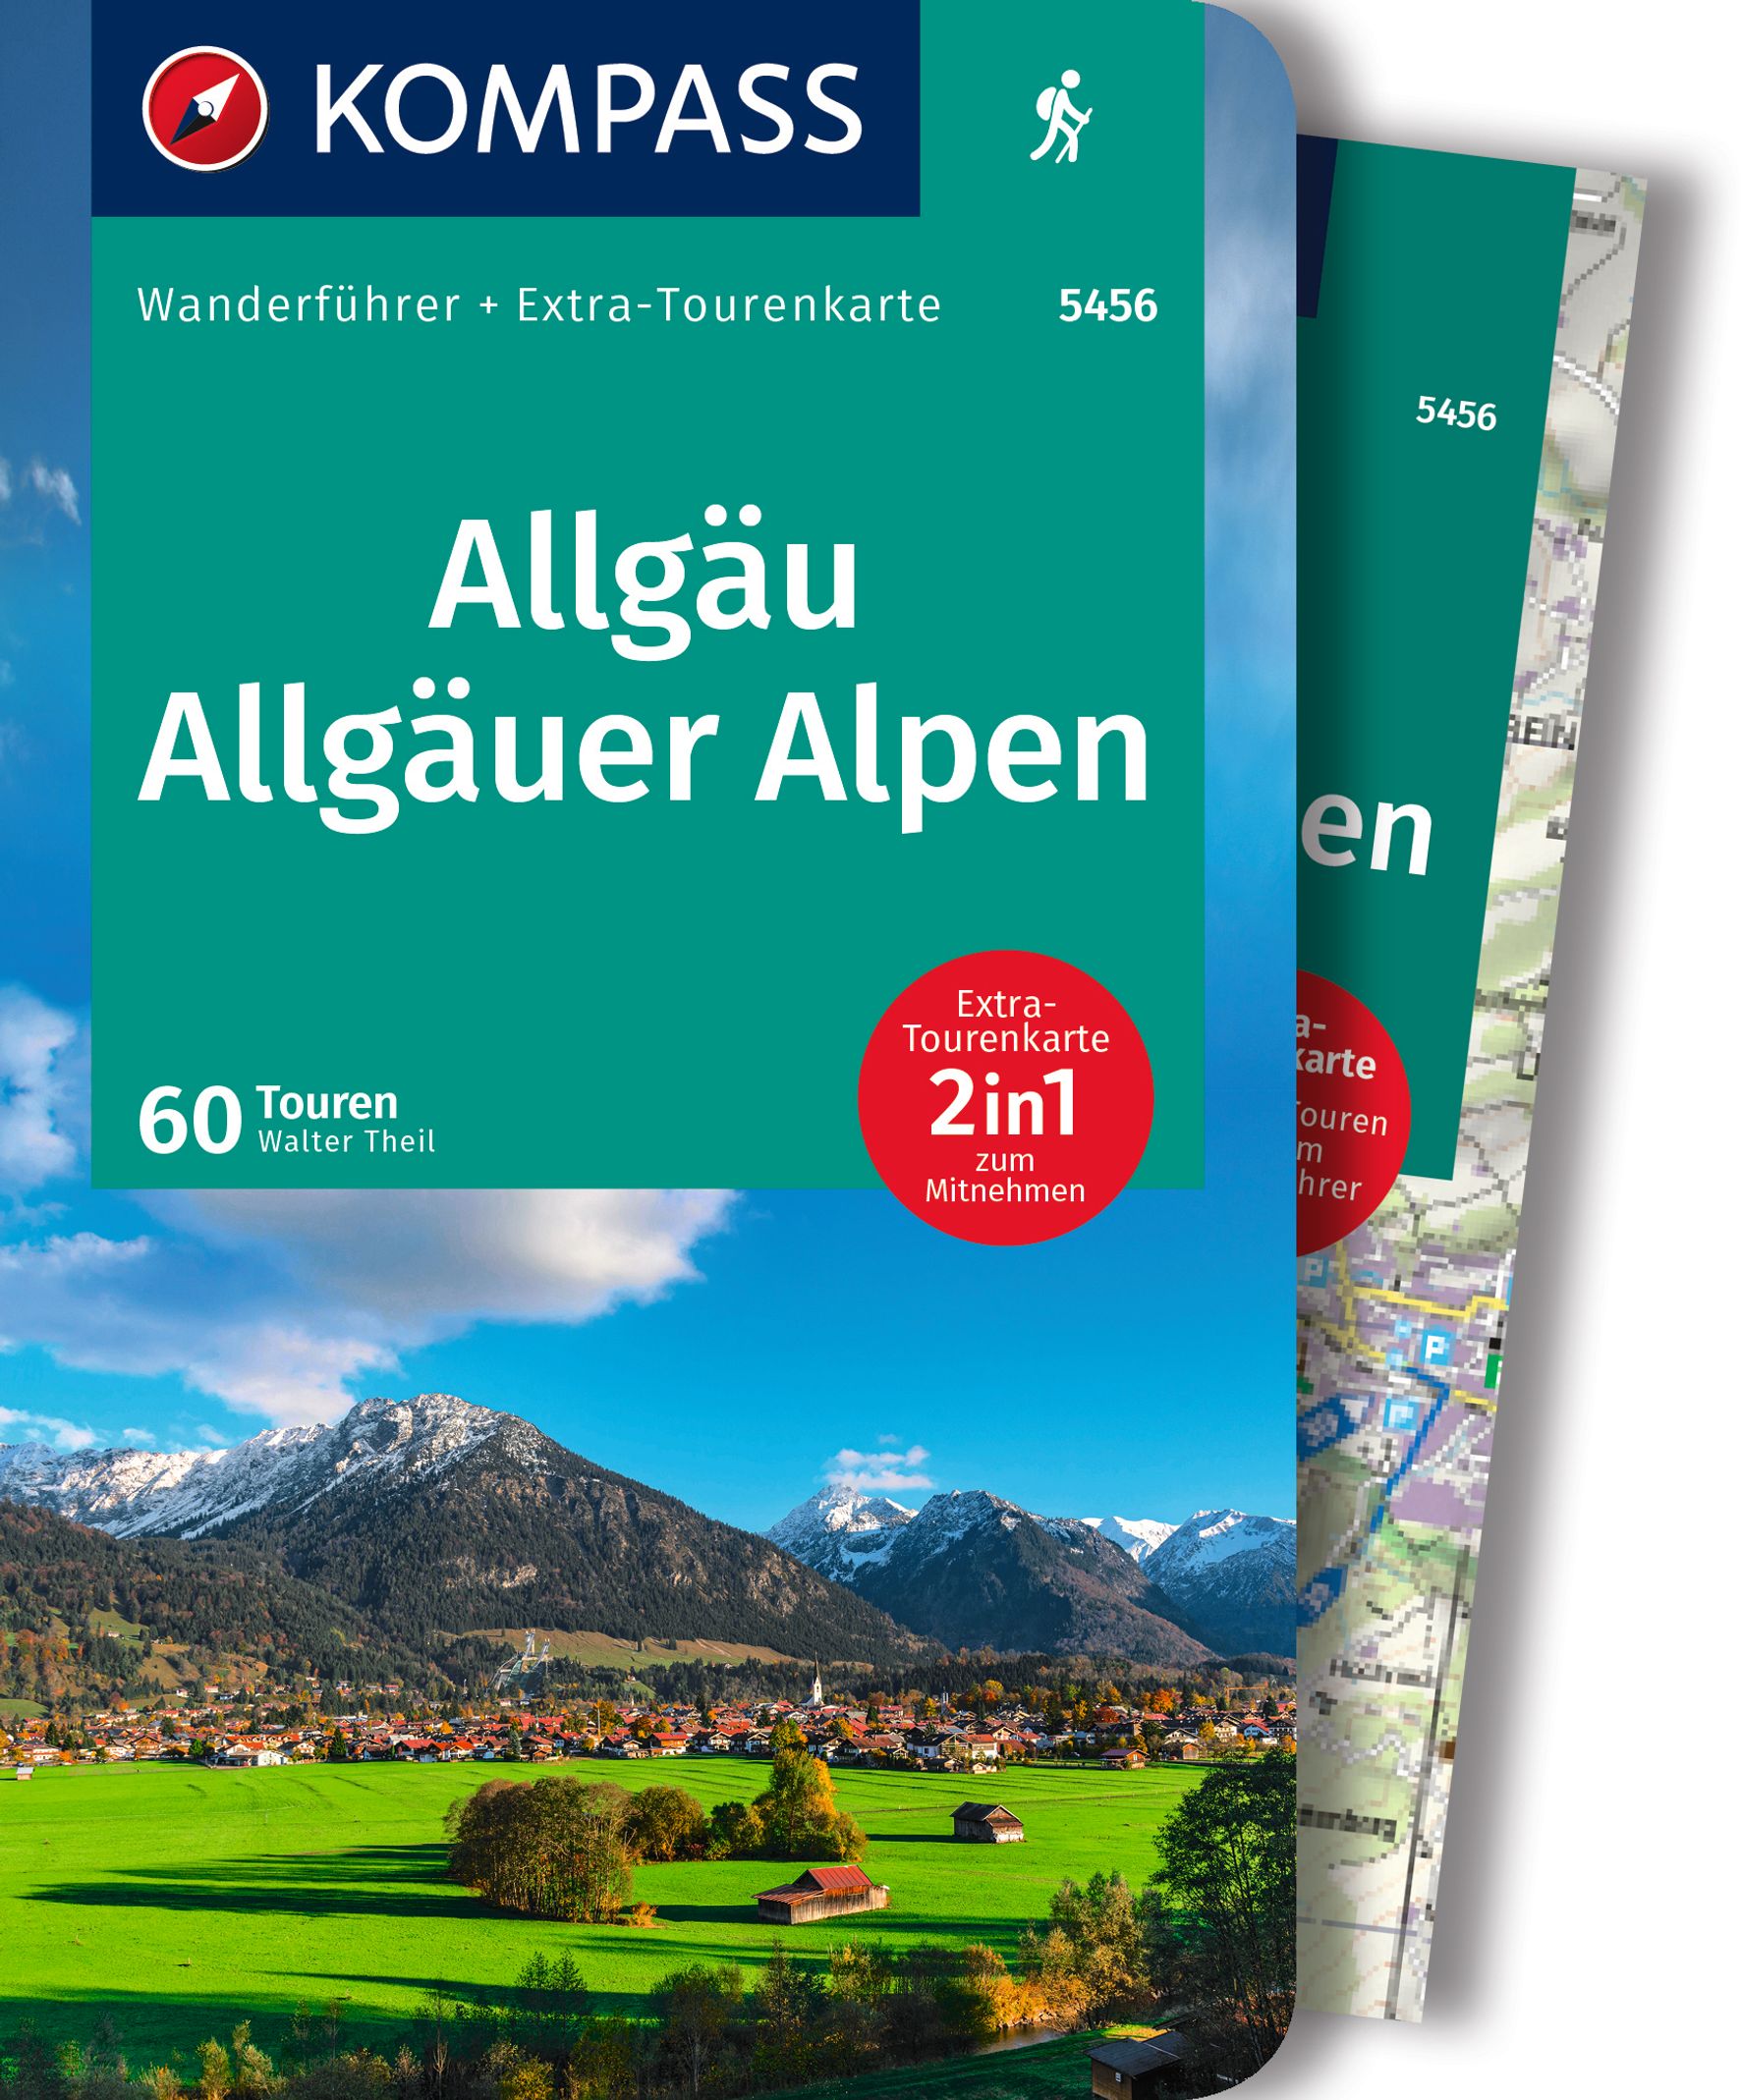 MAIRDUMONT Allgäu, Allgäuer Alpen, 60 Touren mit Extra-Tourenkarte